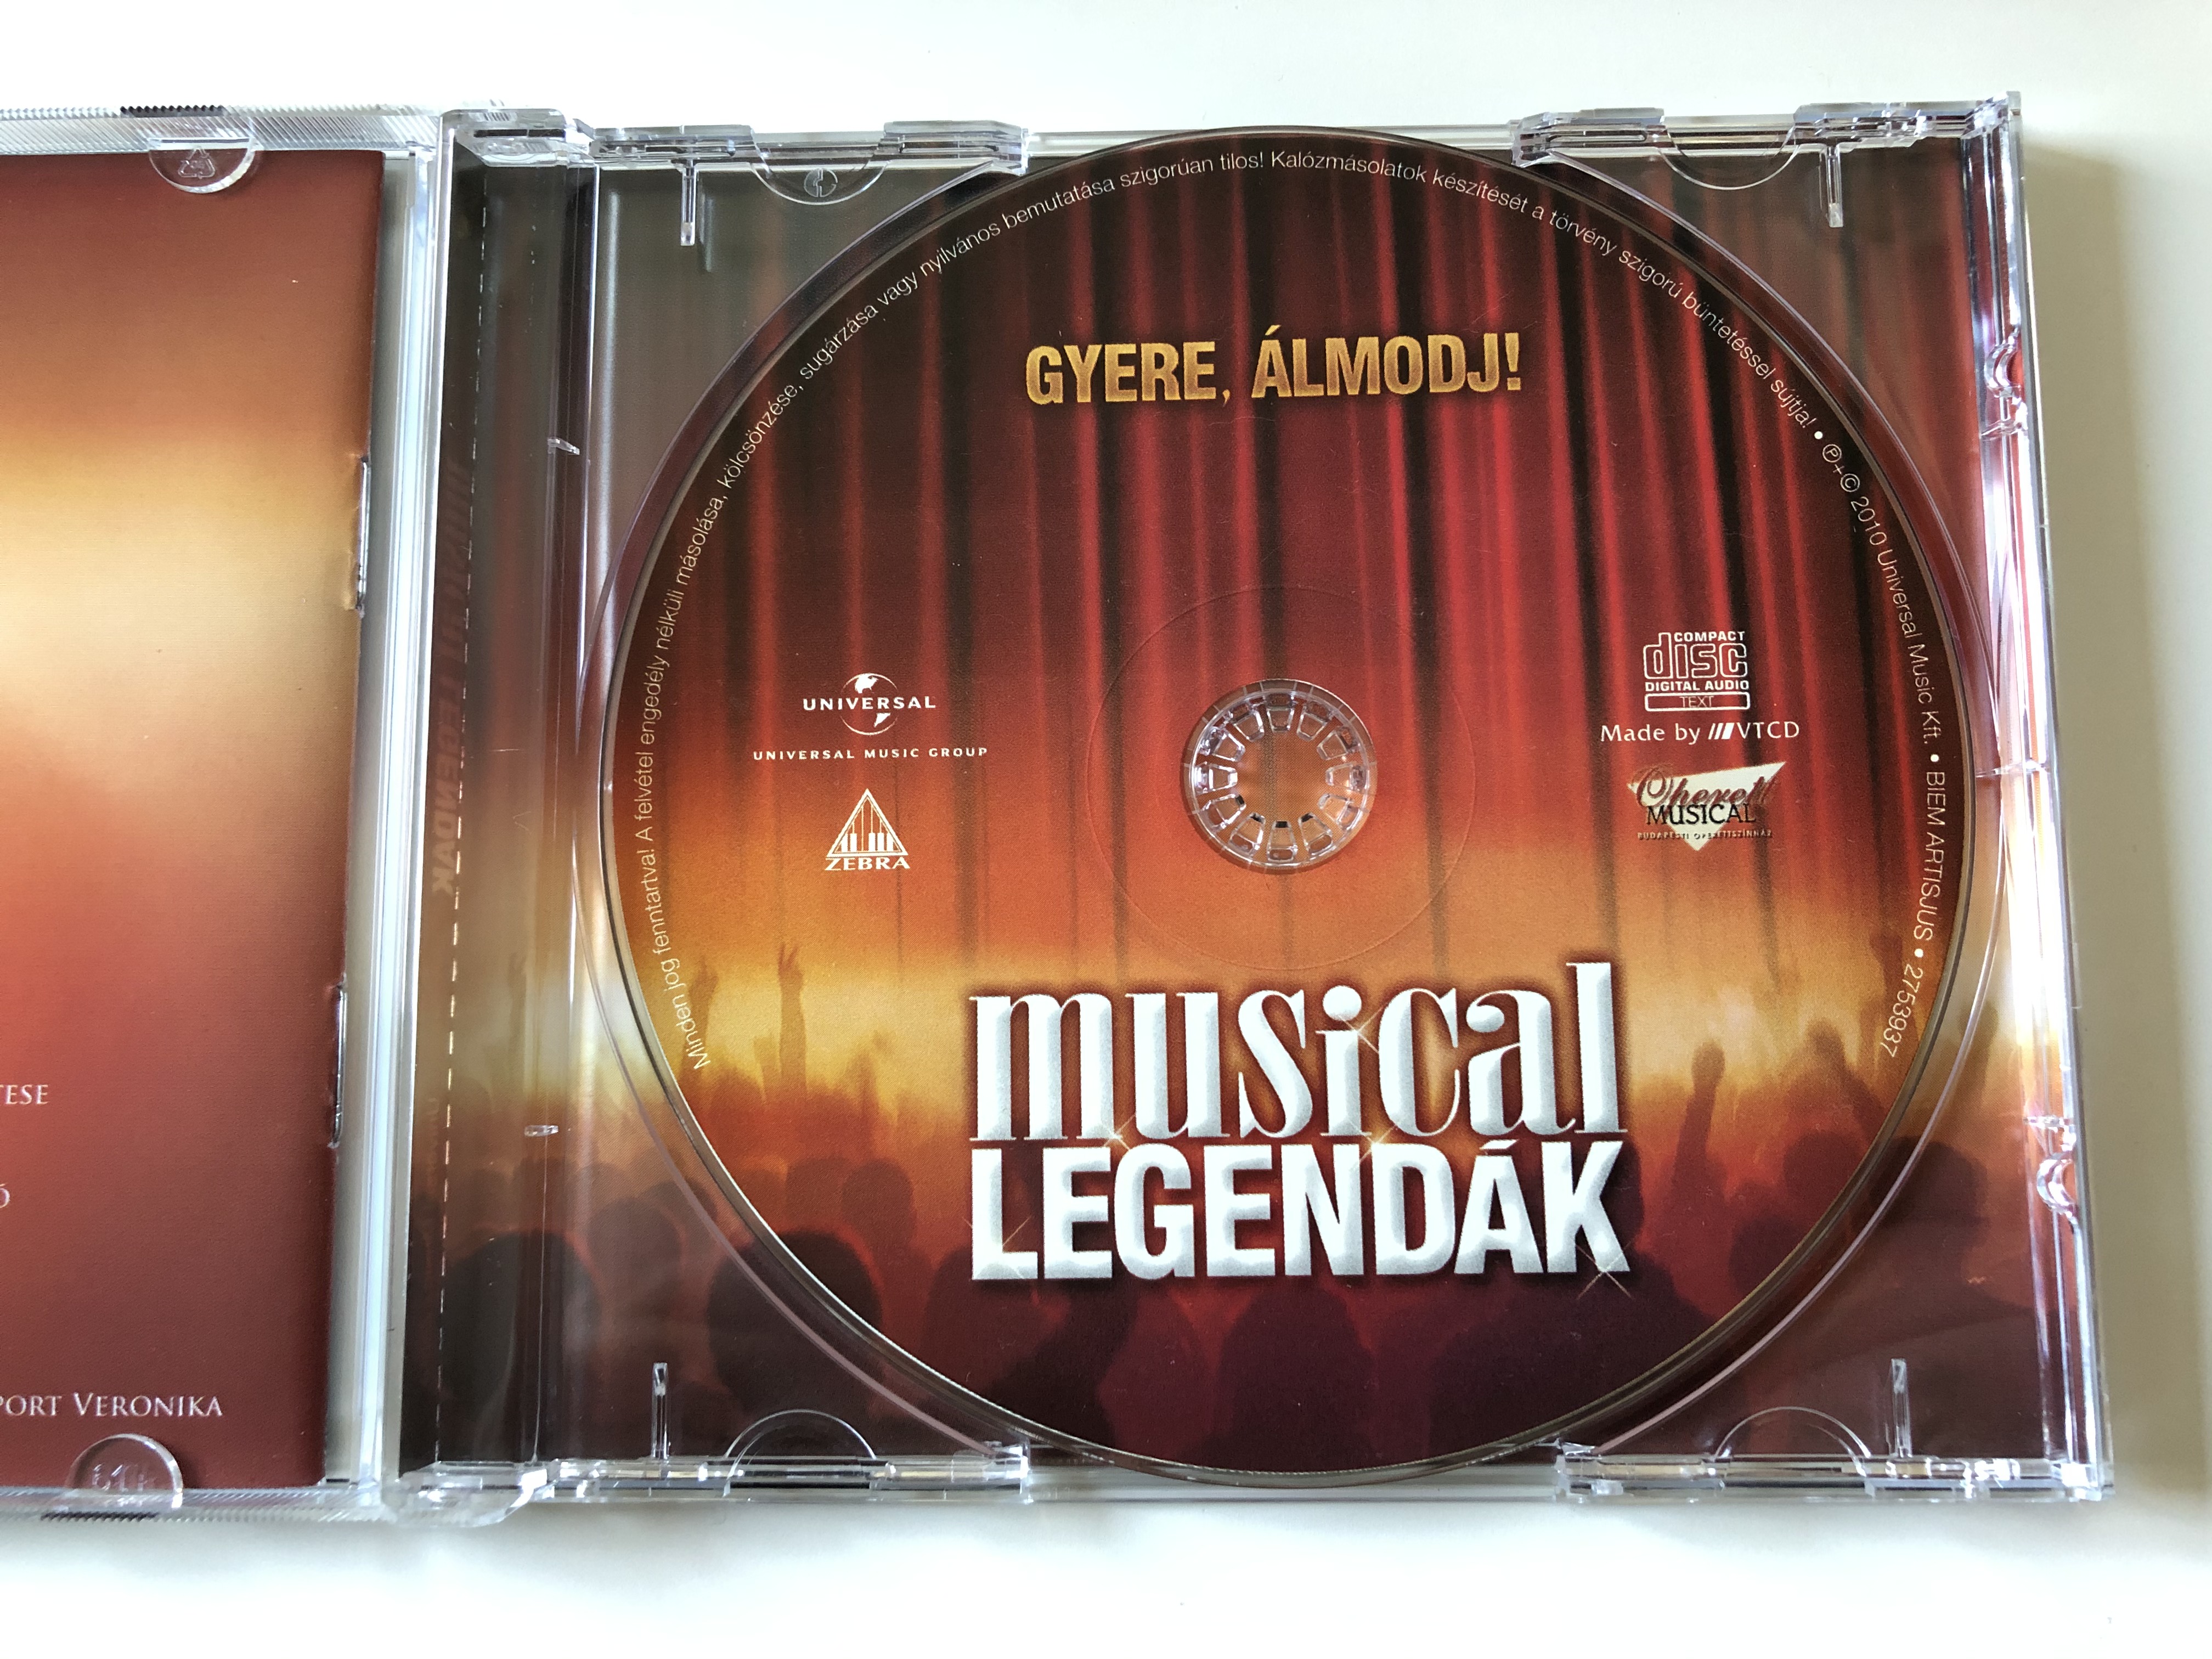 gyere-almodj-musical-legend-k-a-budapesti-operettszinhaz-es-a-universal-music-kozos-koncertsorozata-vago-zsuzsi-dolhai-attila-peller-anna-m-sz-ros-rp-d-zsolt-ker-nyi-mikl-s-m-t-uni-6-.jpg